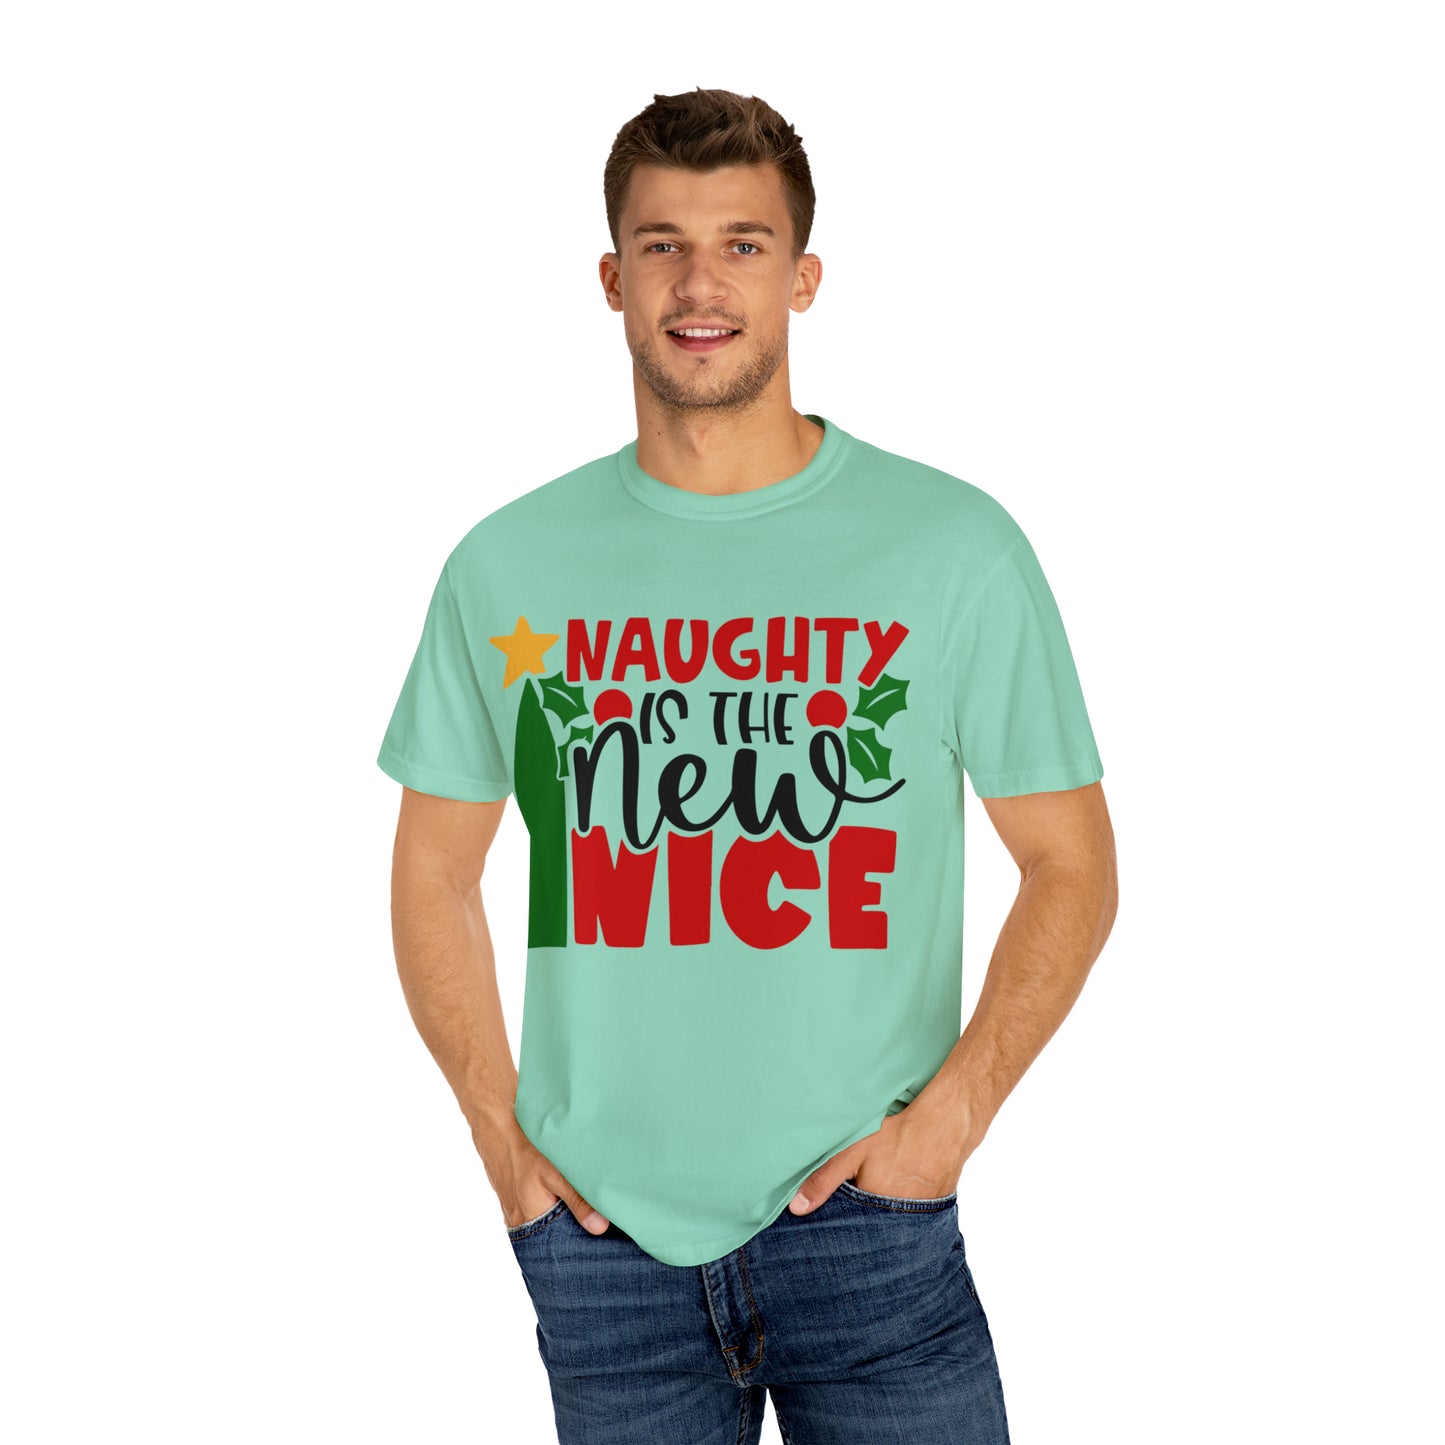 Naughty Is The New Nice Shirt, Funny Christmas Shirt, Christmas Party Shirt, Sarcastic Christmas Shirt, Holiday Shirt, Naughty Nice Shirt